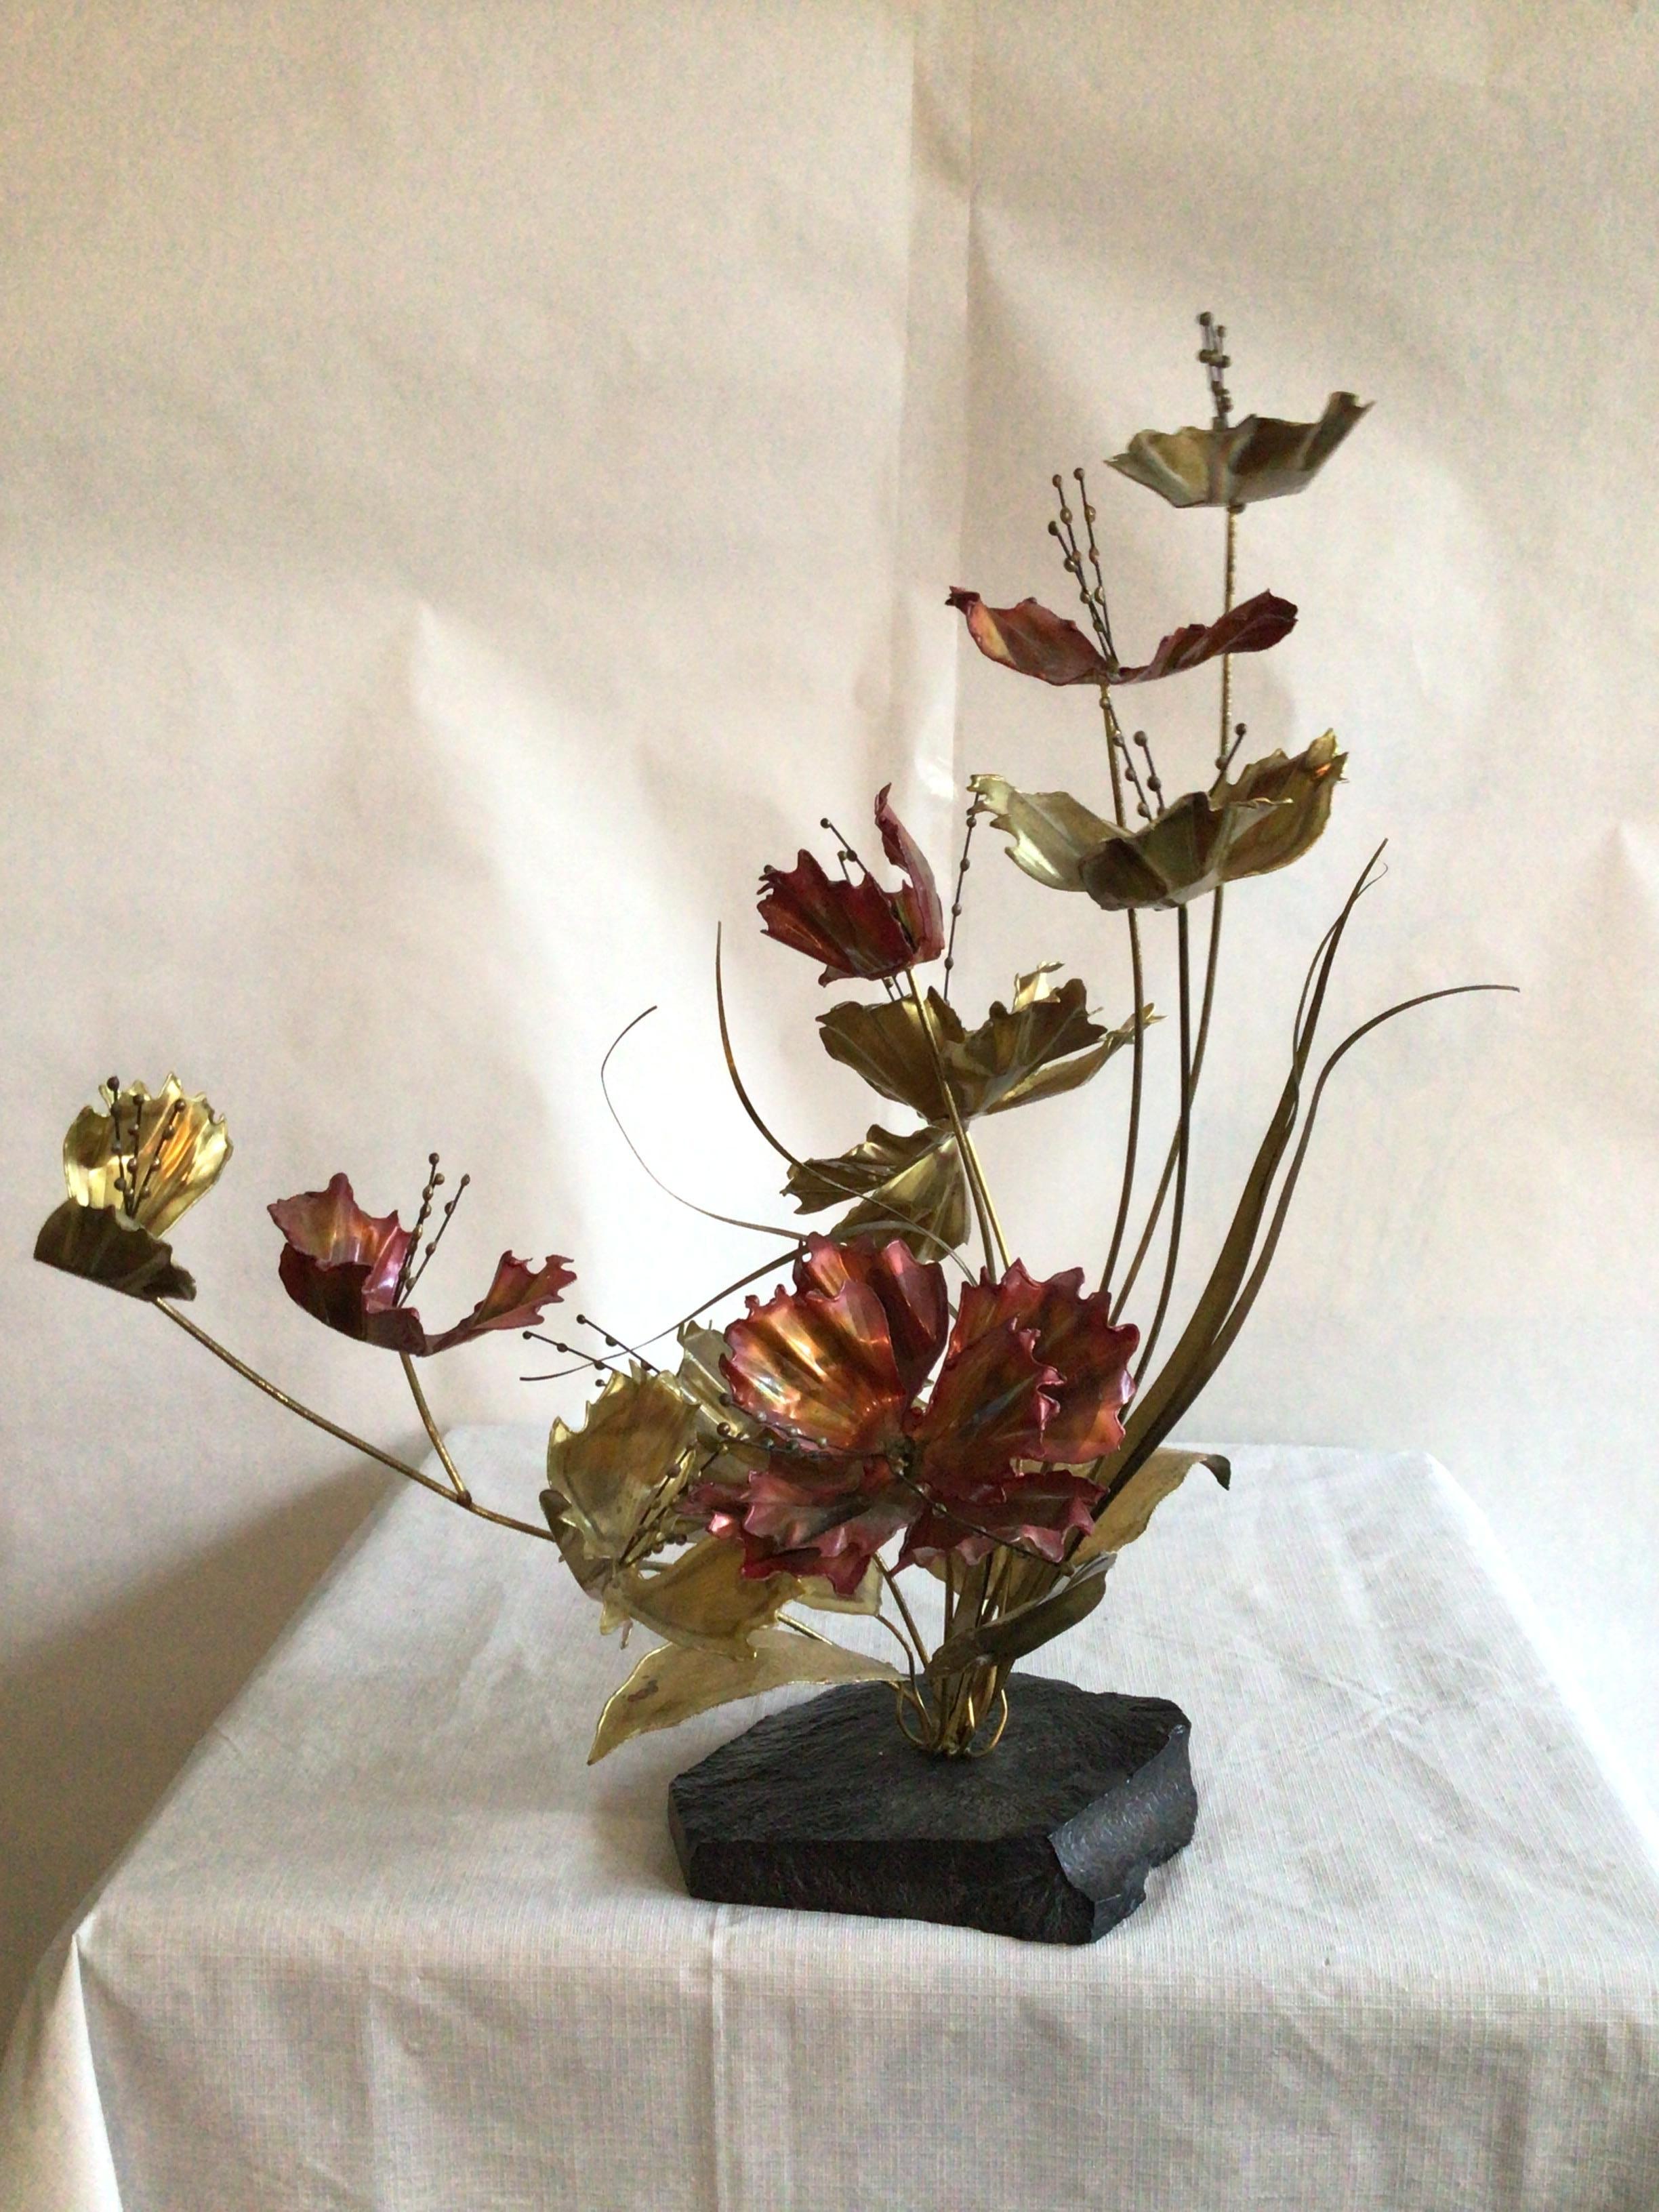 Sculpture florale brutaliste des années 1960 en cuivre et laiton sur base en marbre
Cuivre brillant et métal rose
Sculpture de fleurs et de graminées sur un socle en marbre noir
